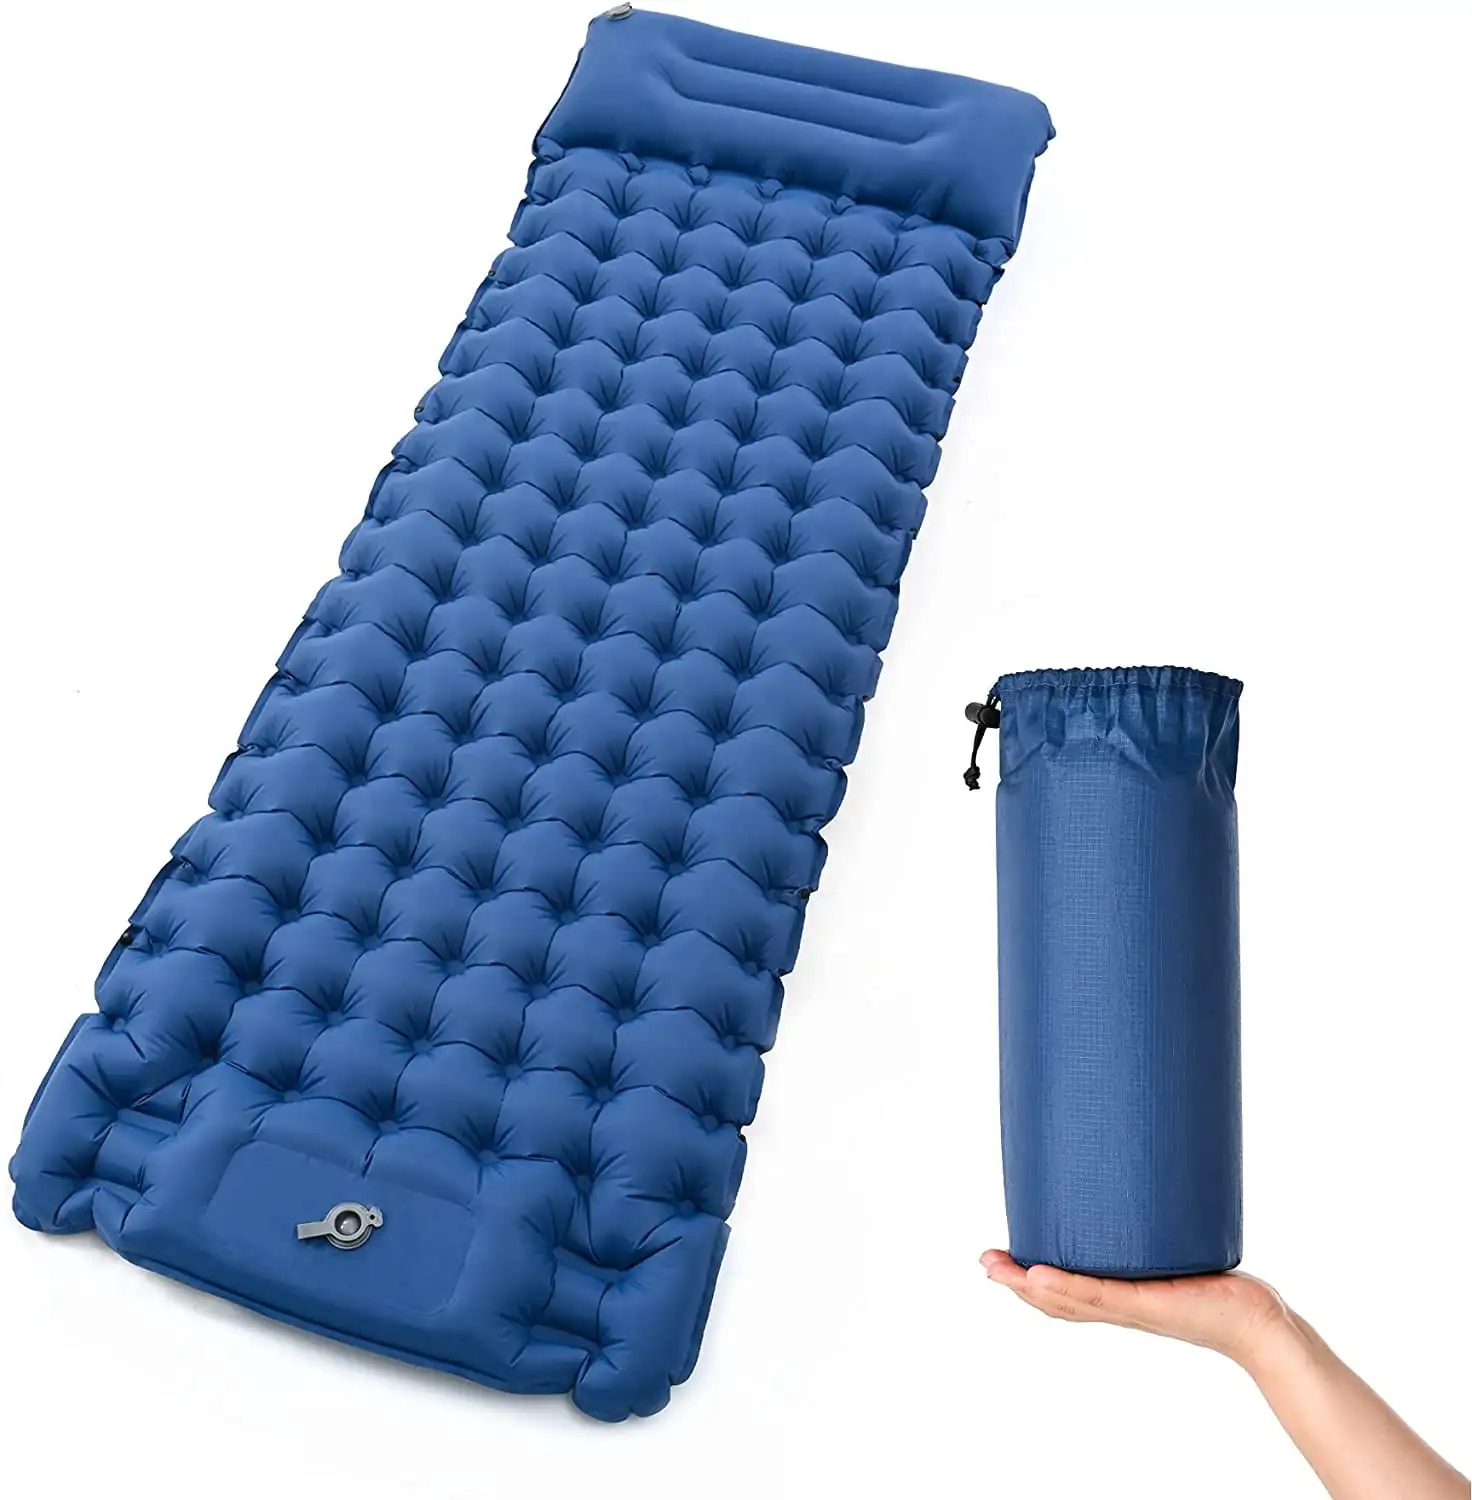 Camping Mat Sleeping Pad Self Inflating Air Mattress